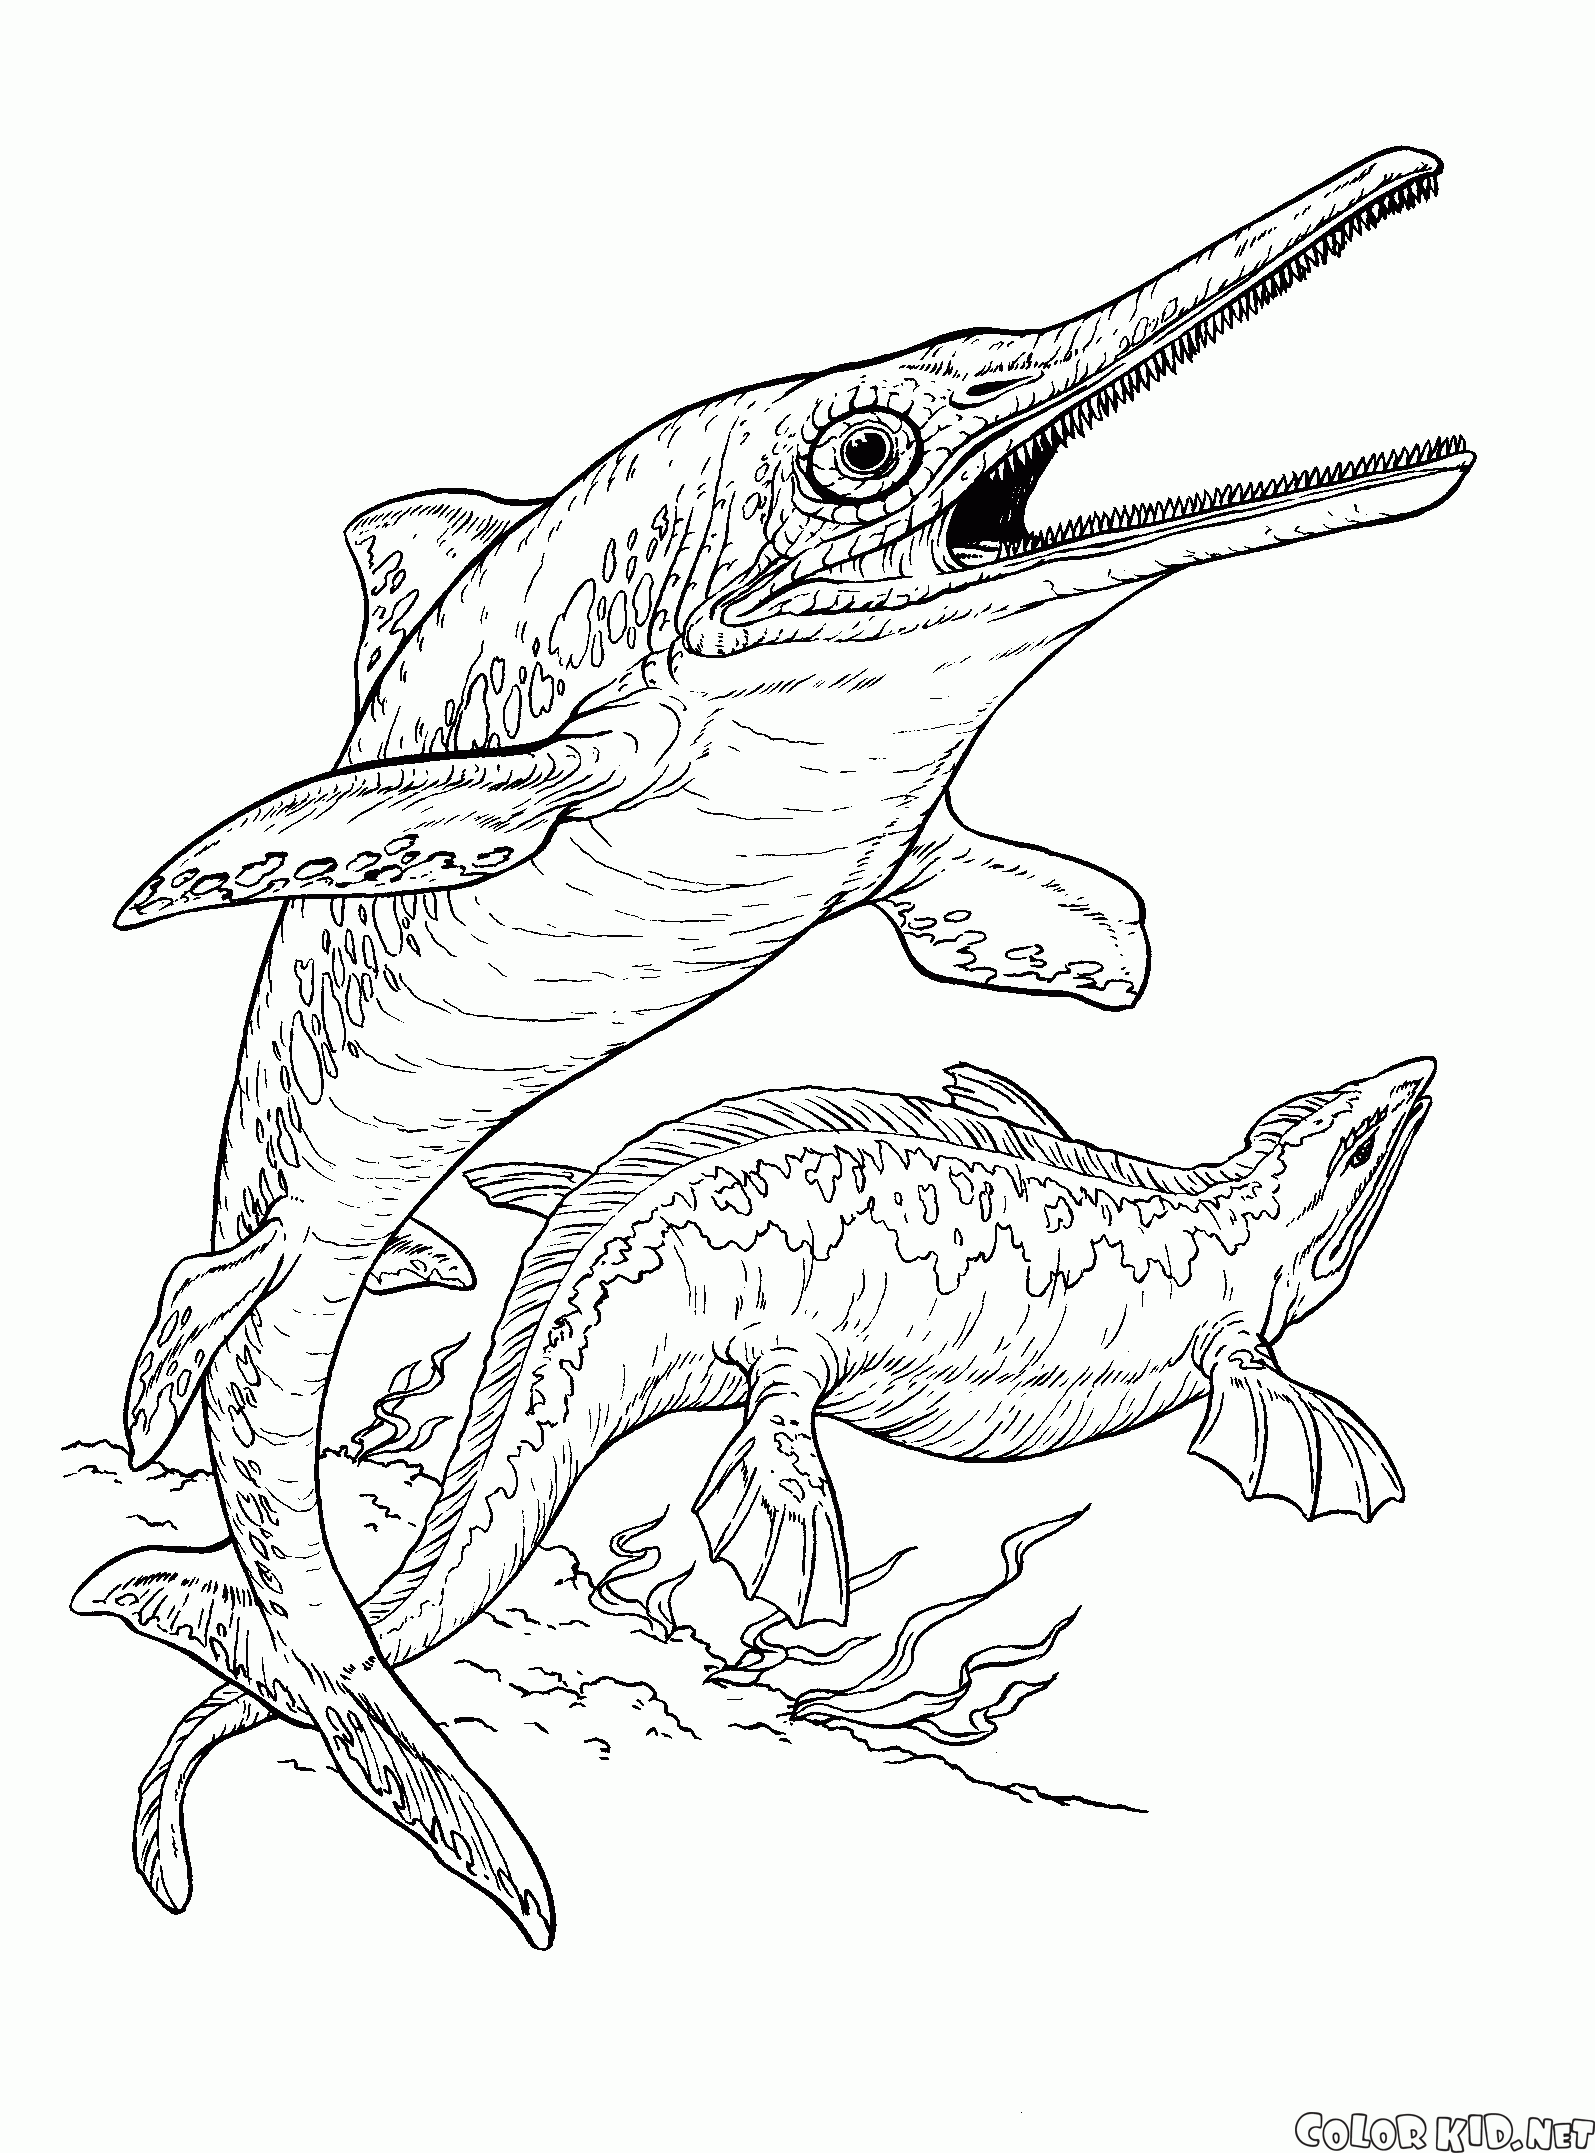 魚竜とプレシオサウルス